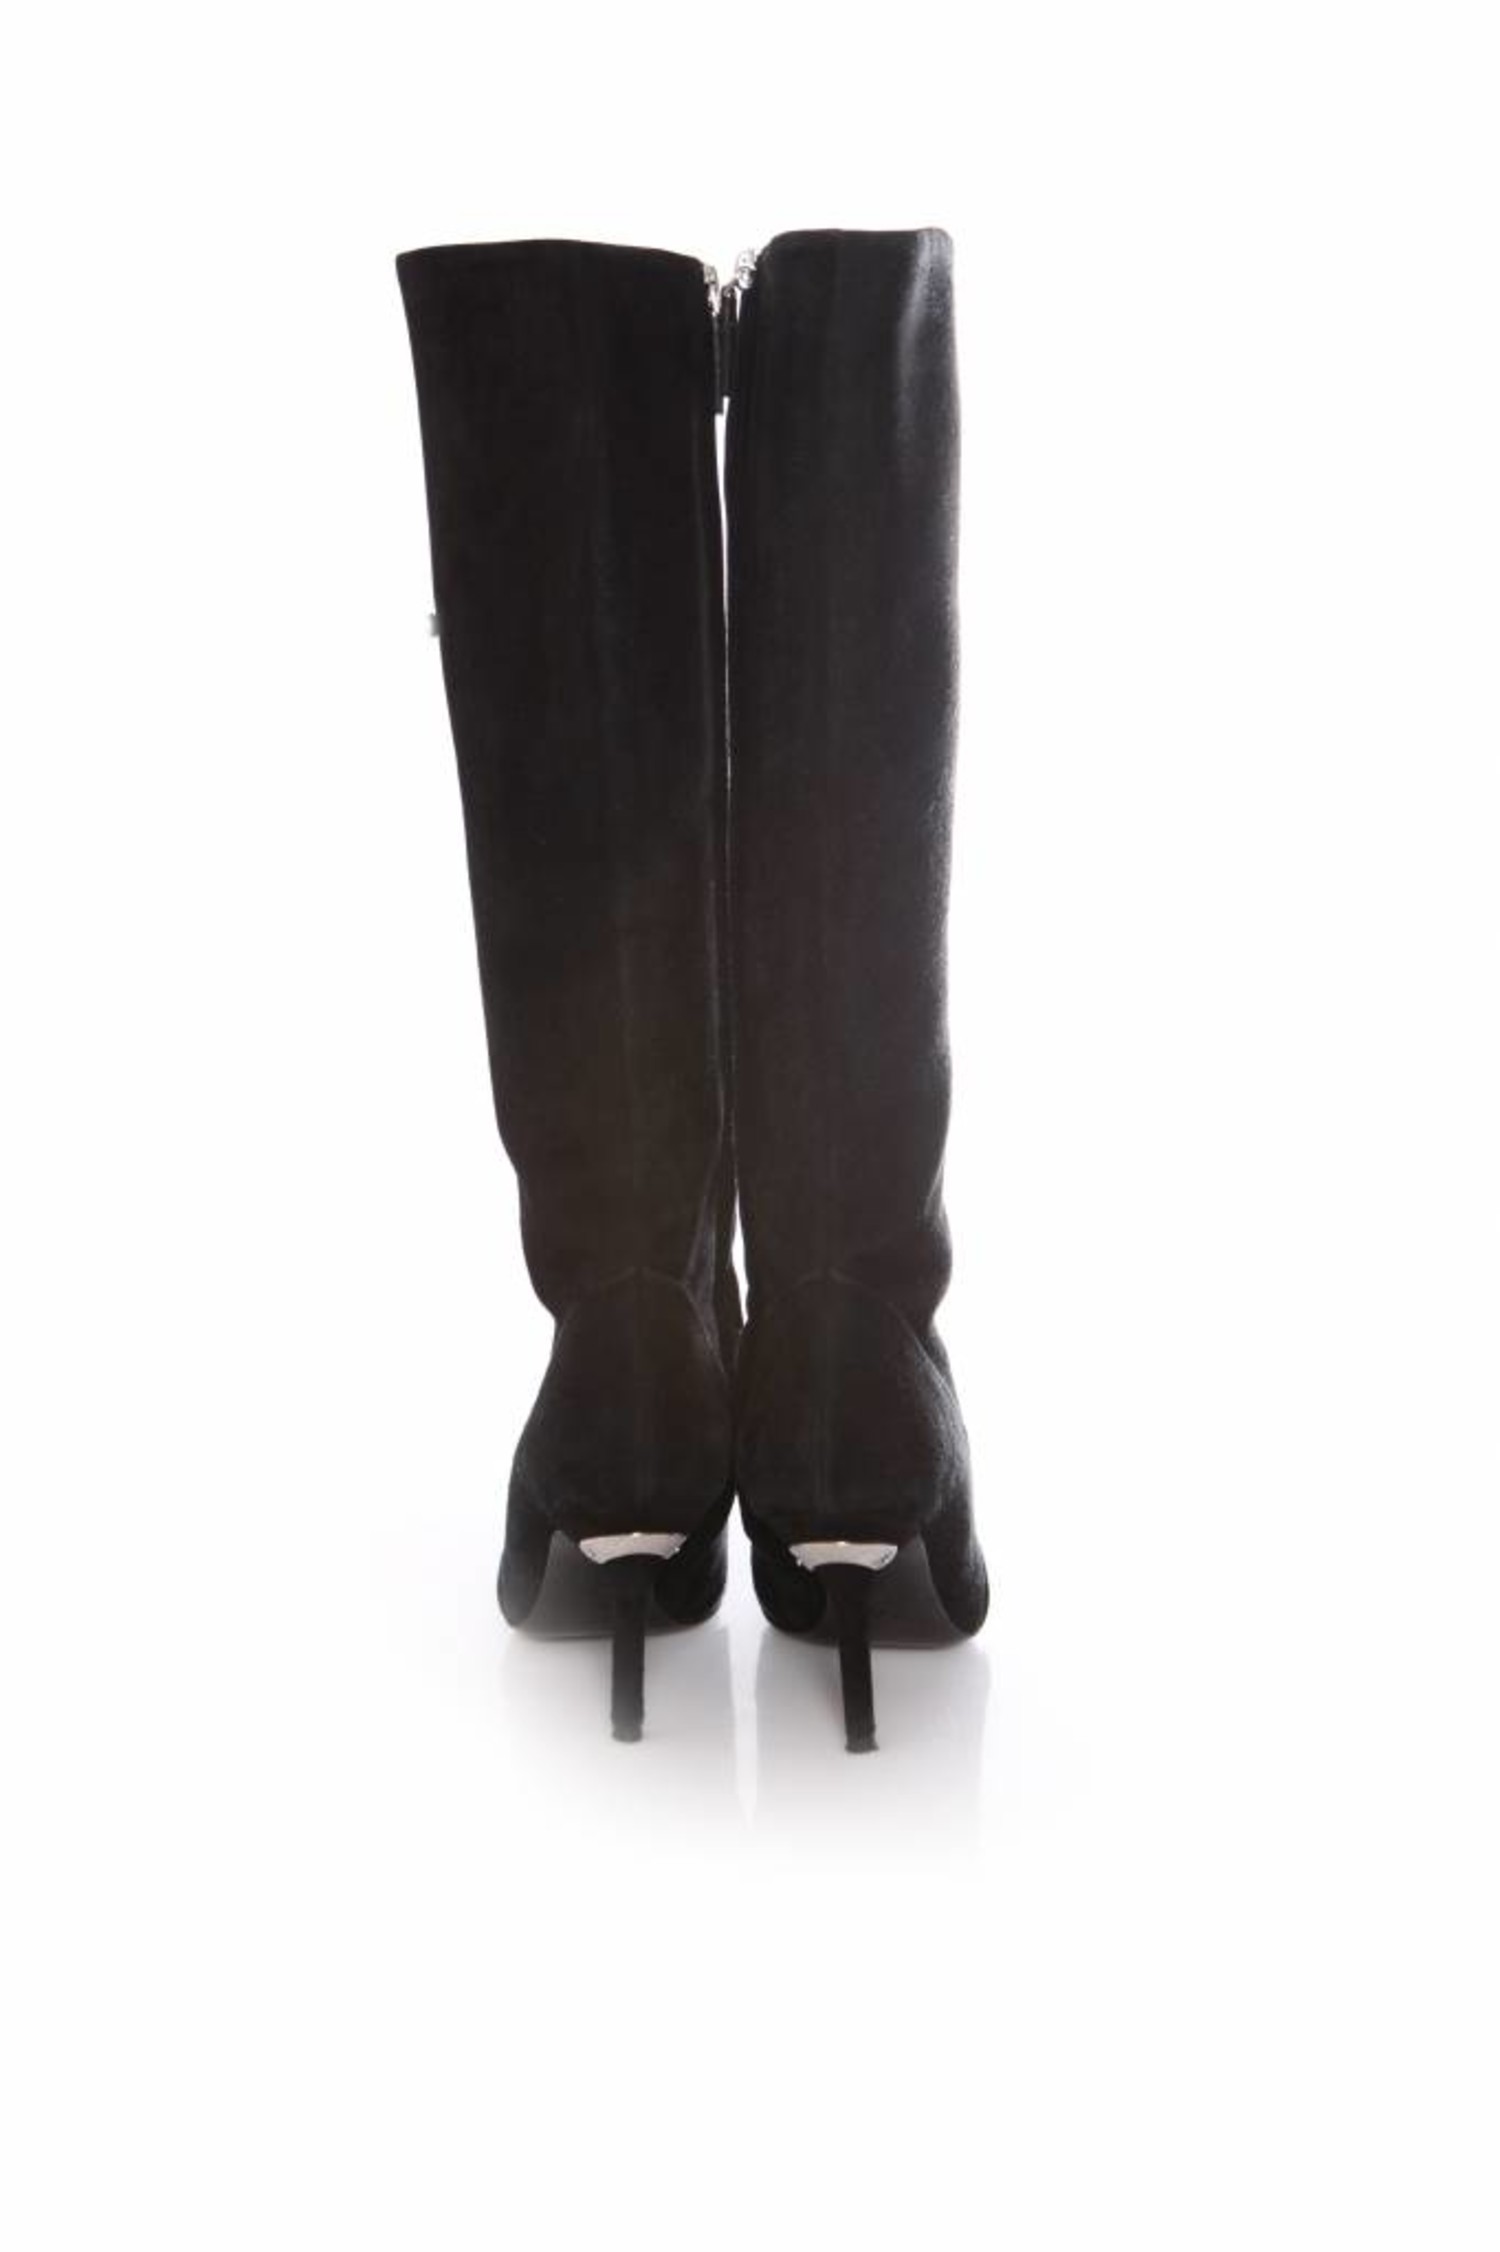 Louis Vuitton Black Suede Block Heel Boots